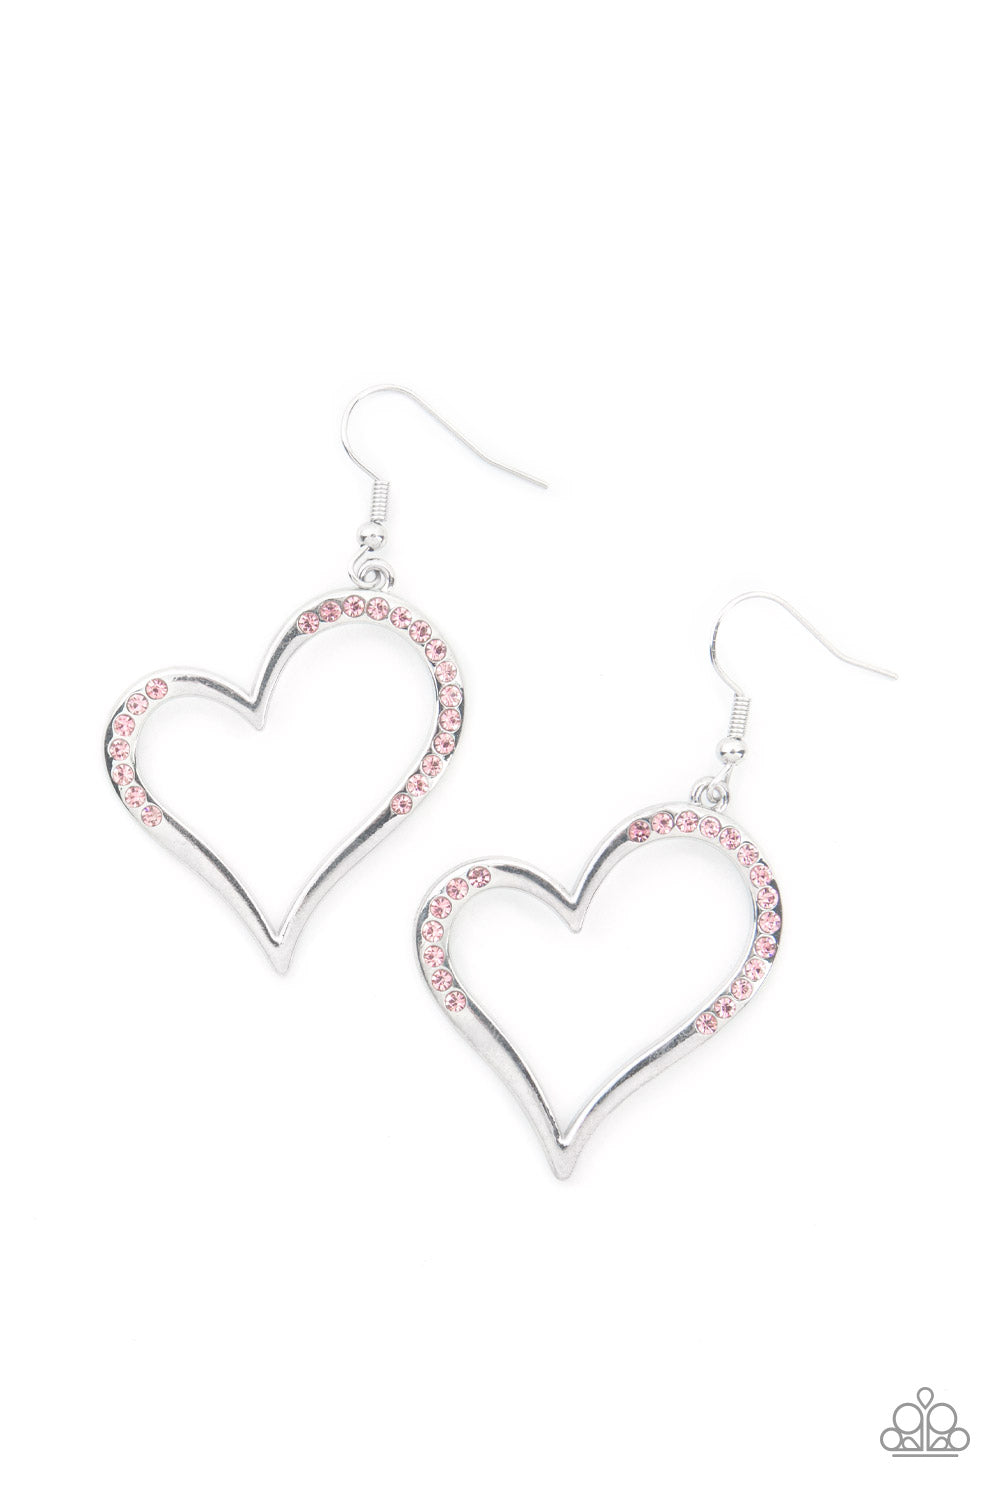 Tenderhearted Twinkle - pink - Paparazzi earrings